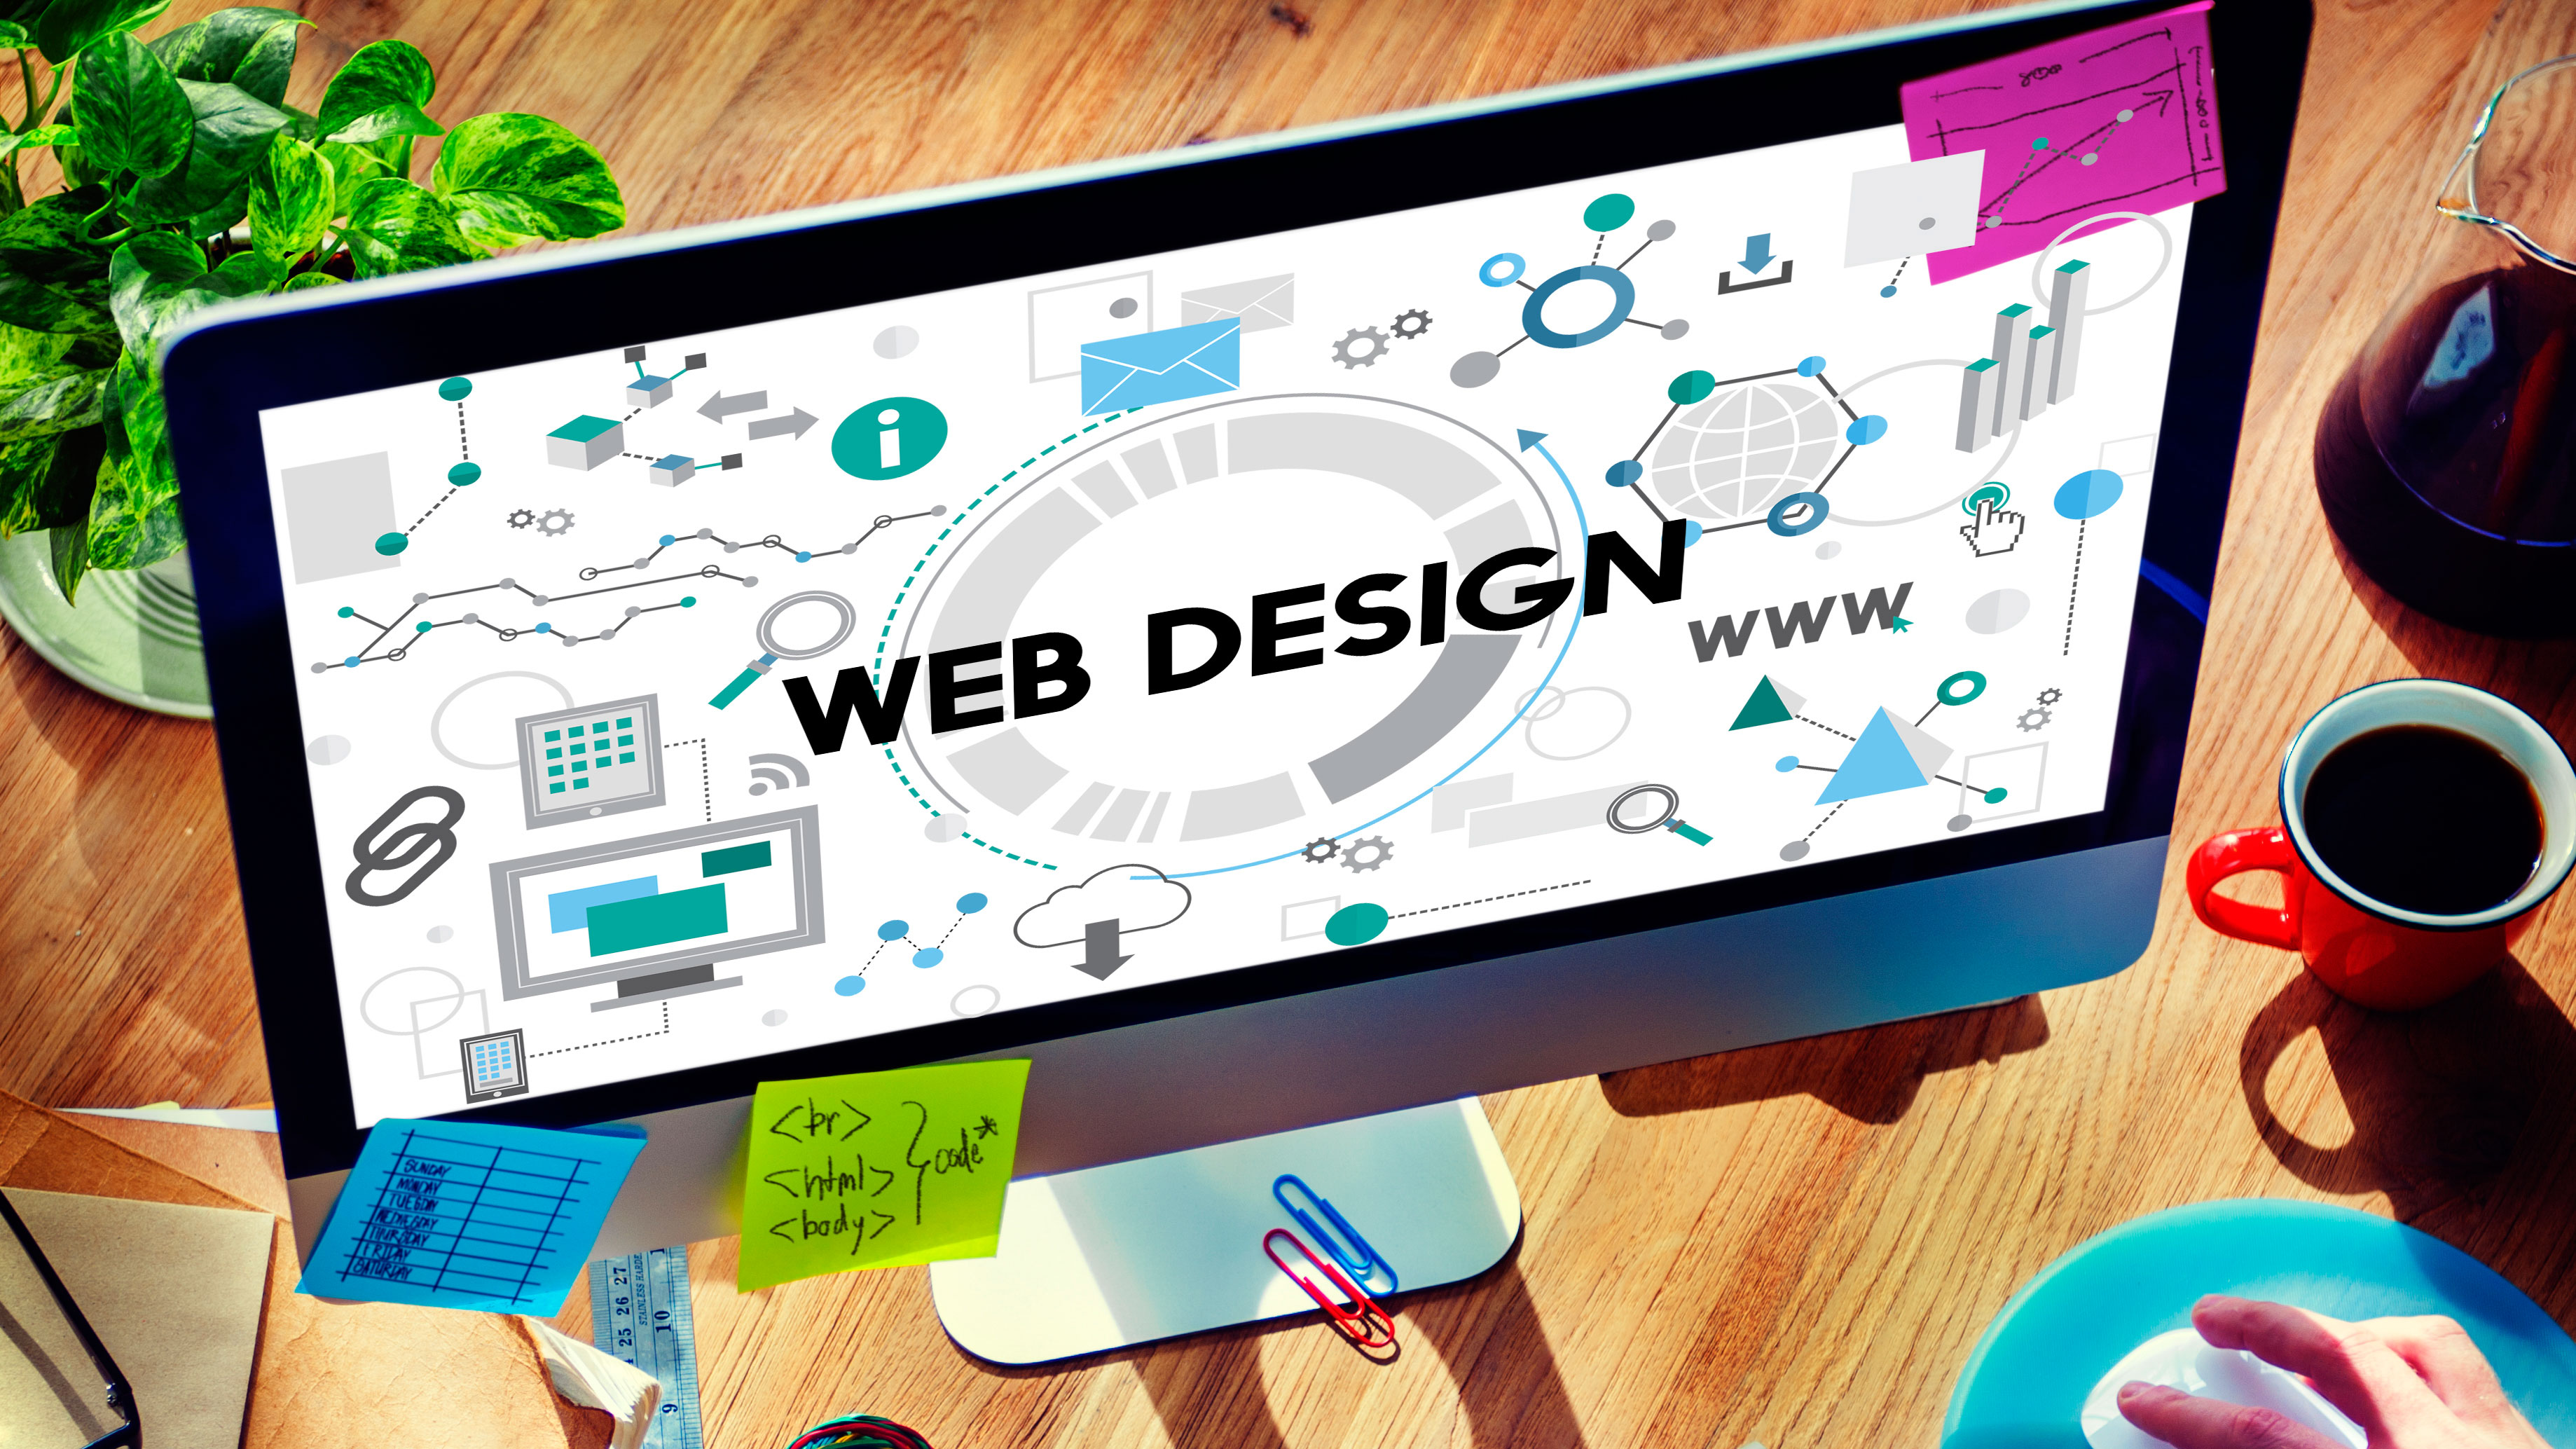 Designing Success through Creative Web design